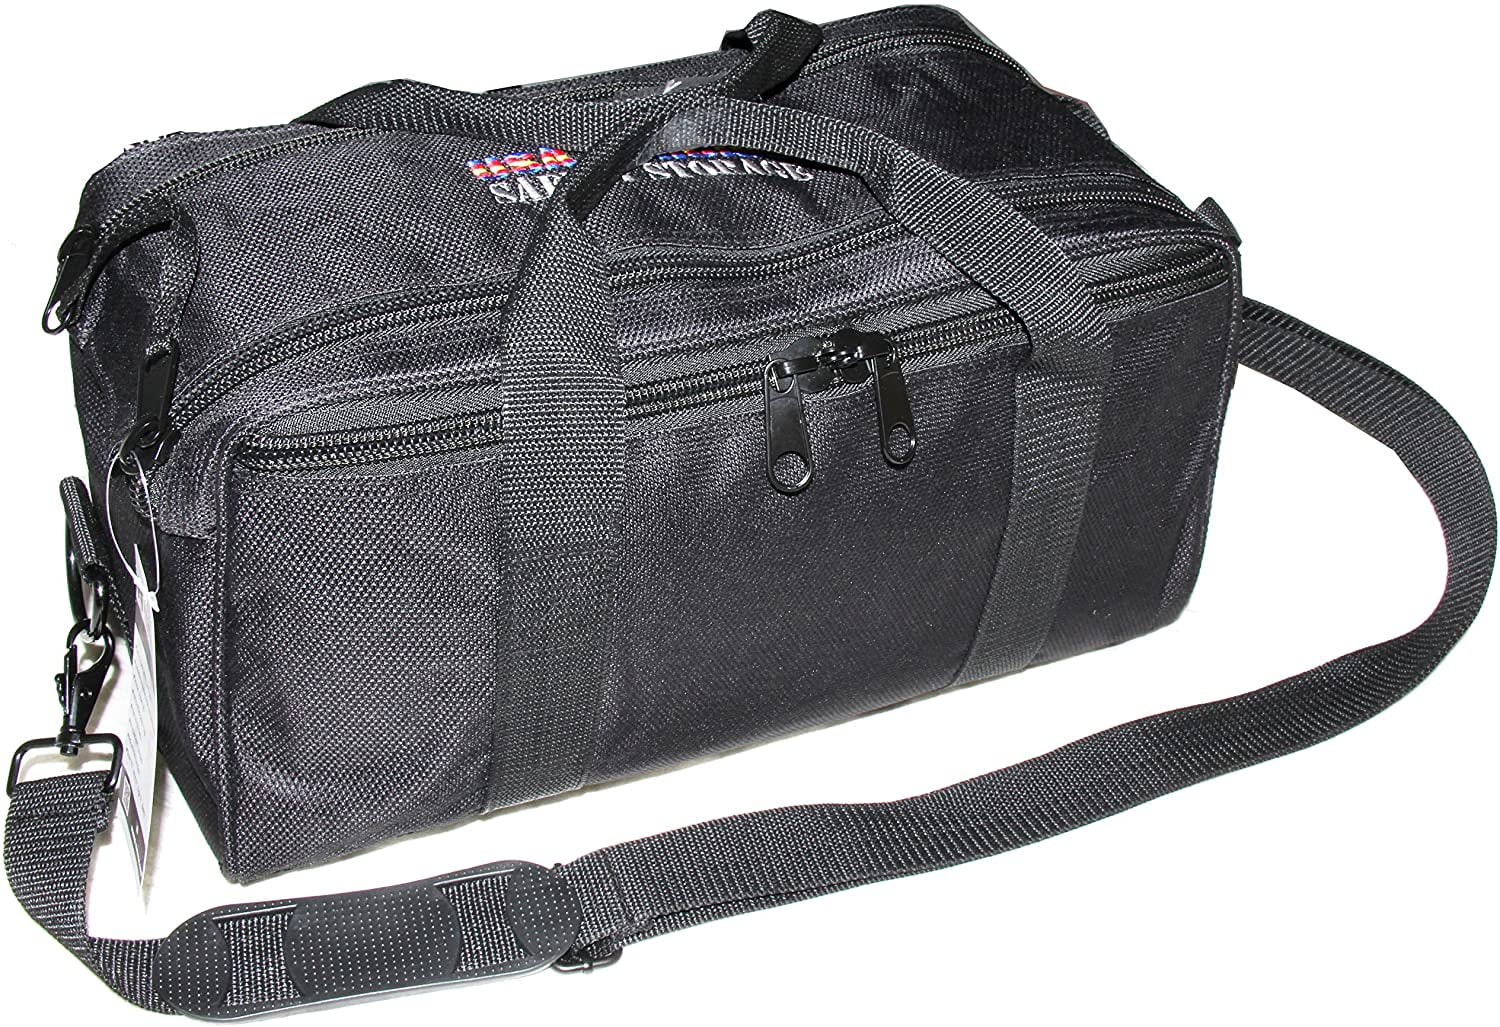 Authentic Goutdoor Medium Range Bag Black Lockable Zippers 1411mrb for sale online 